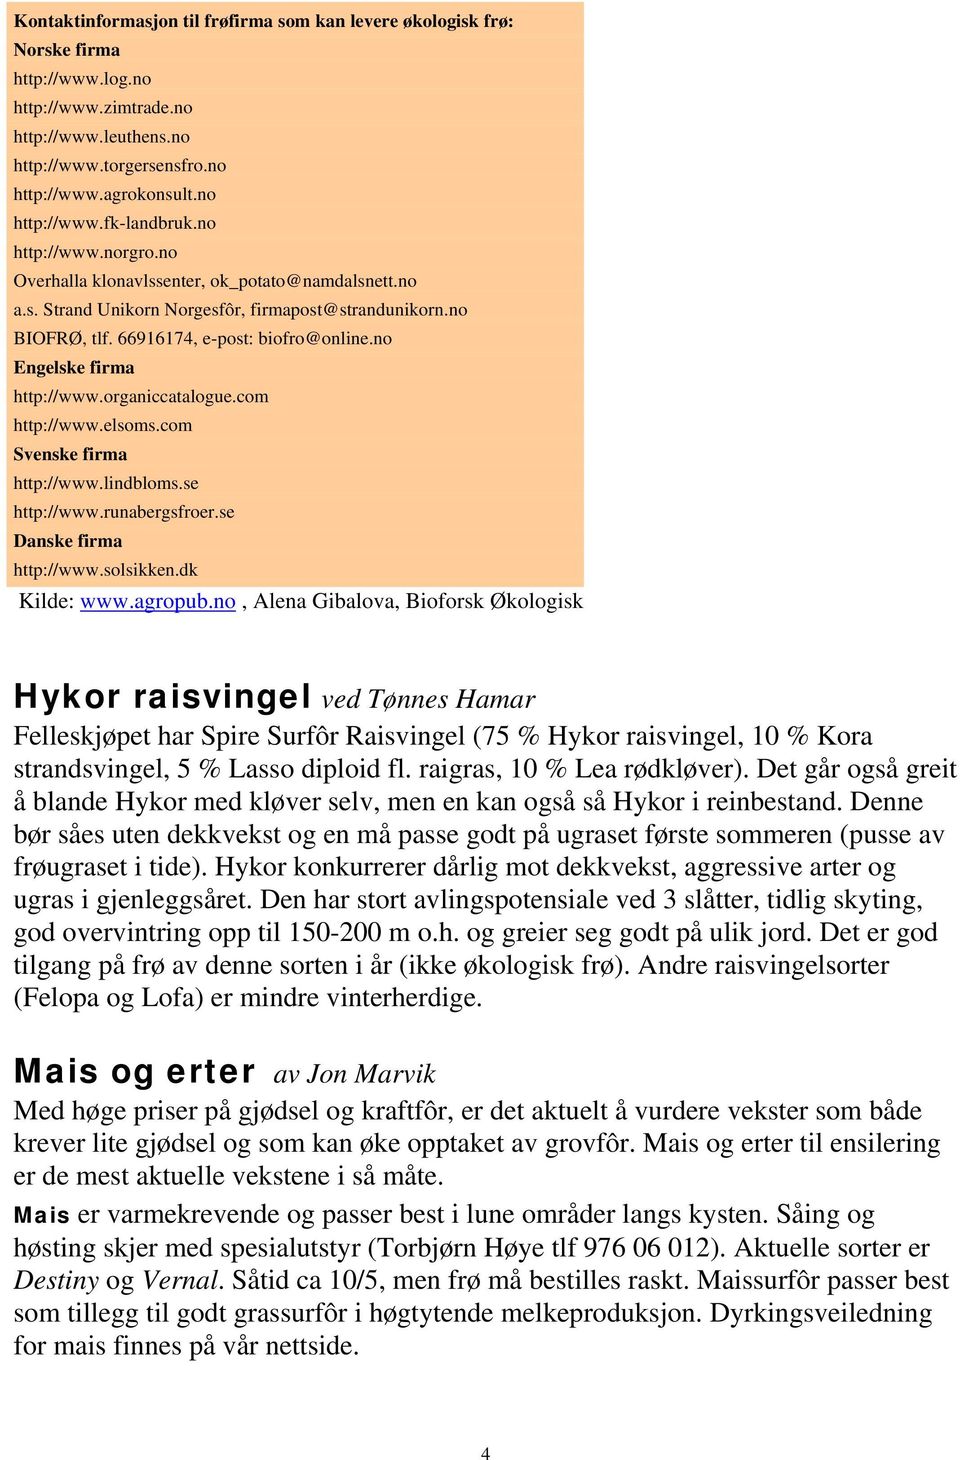 66916174, e-post: biofro@online.no Engelske firma http://www.organiccatalogue.com http://www.elsoms.com Svenske firma http://www.lindbloms.se http://www.runabergsfroer.se Danske firma http://www.